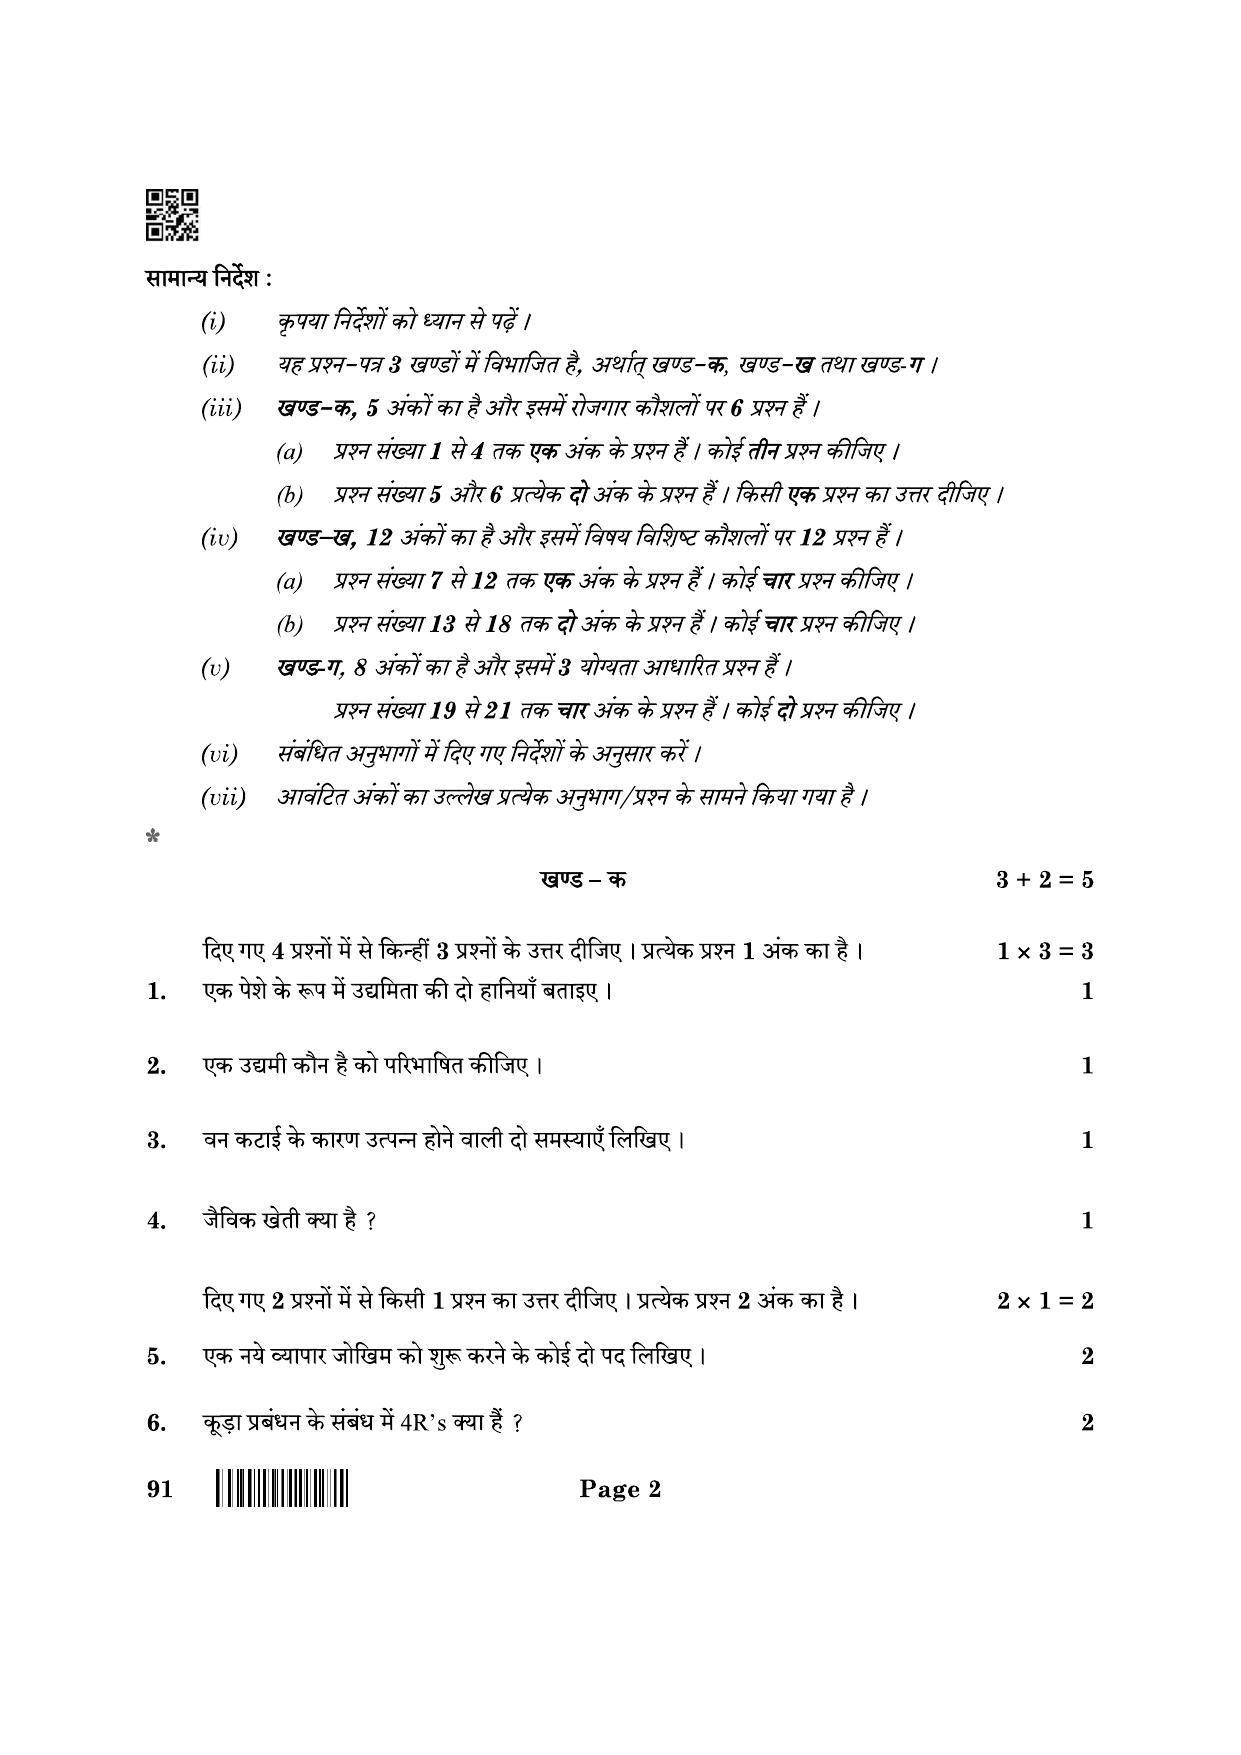 CBSE Class 10 91 Automotive 2022 Question Paper - Page 2